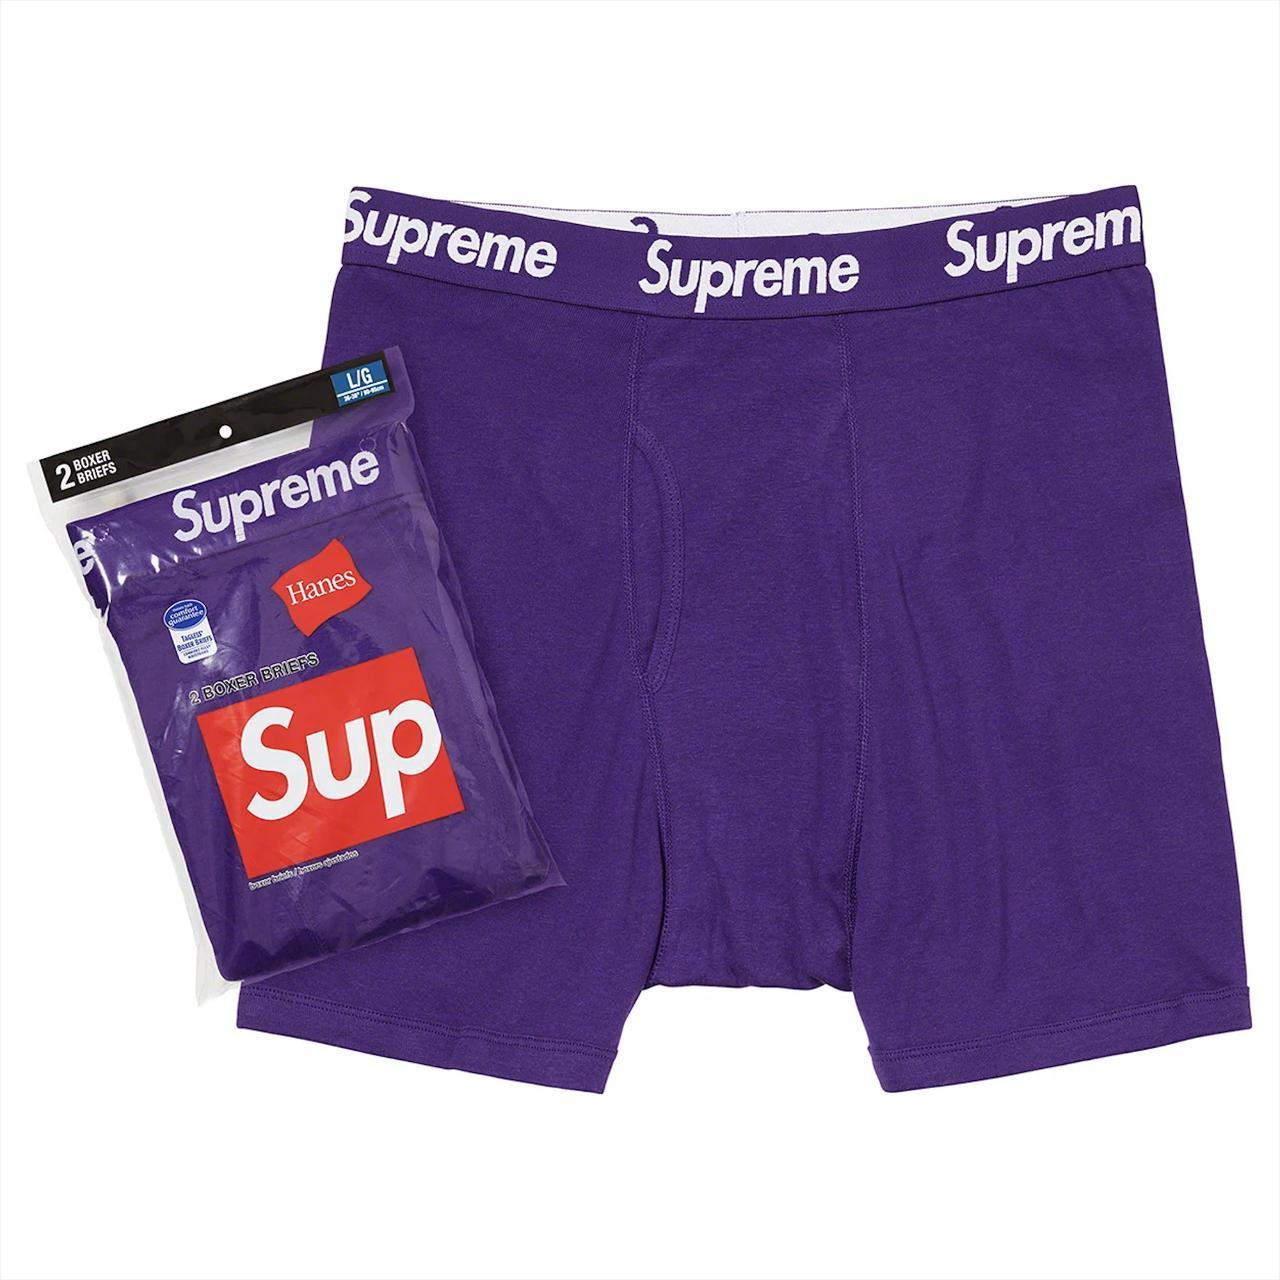 Supreme Men's Purple and White Boxers-and-briefs (2)